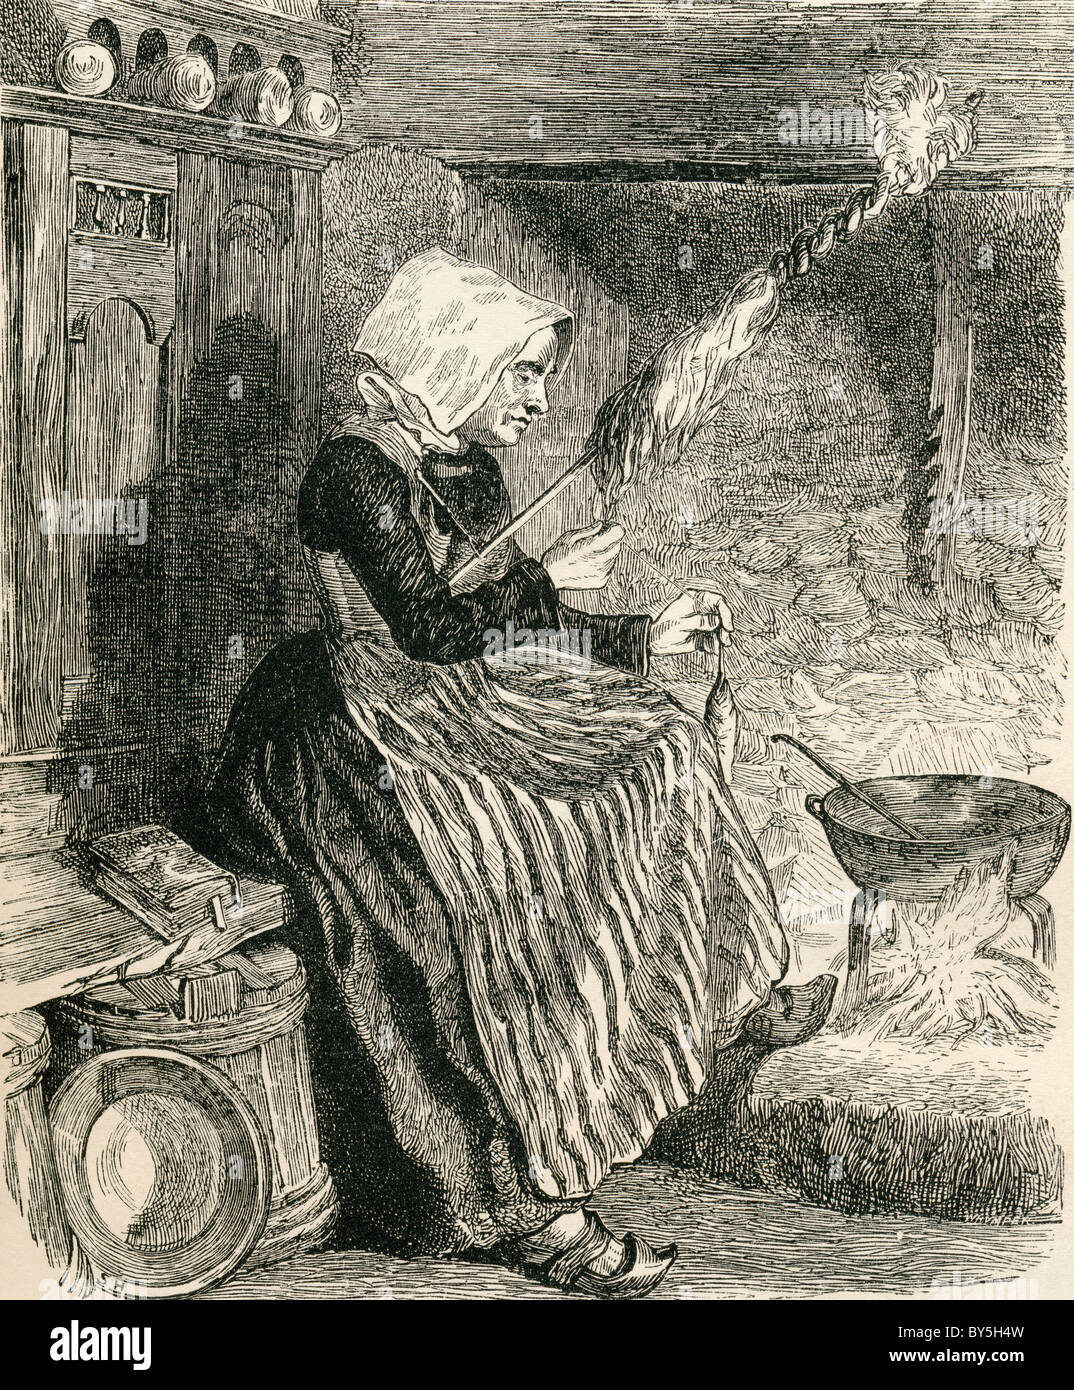 Une femme Paysan Breton filage de la laine dans le xixe siècle. Photos de l'anglais par le révérend Samuel G. Green, publié en 1878. Banque D'Images